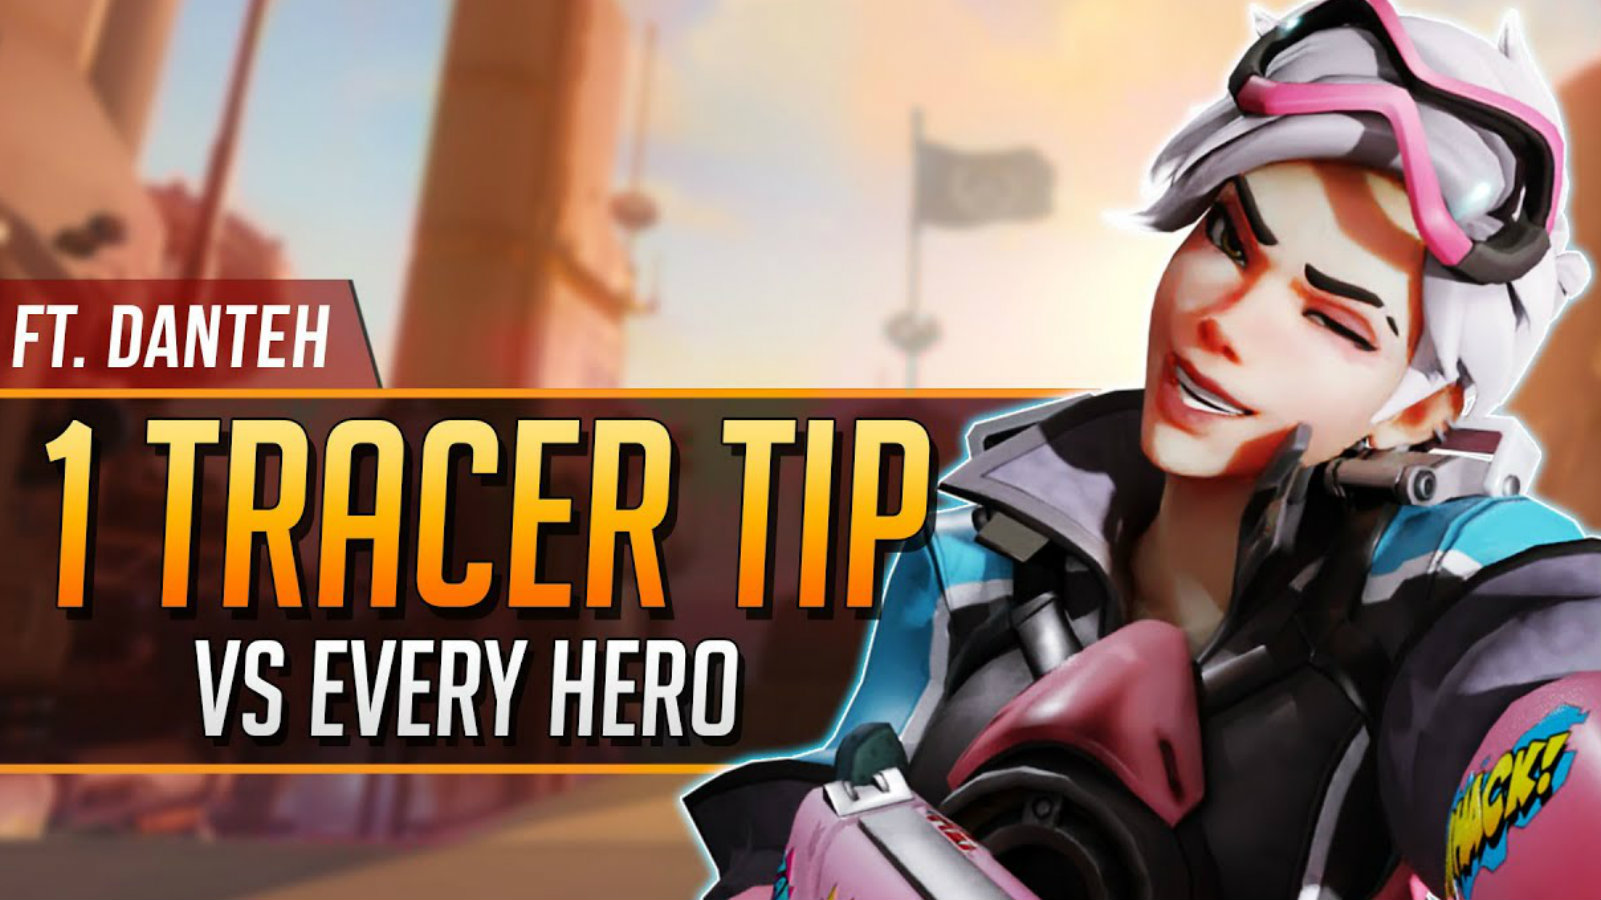 3 Tracer tips. What hero next? #overwatch #overwatch2 #overwatchtiktok